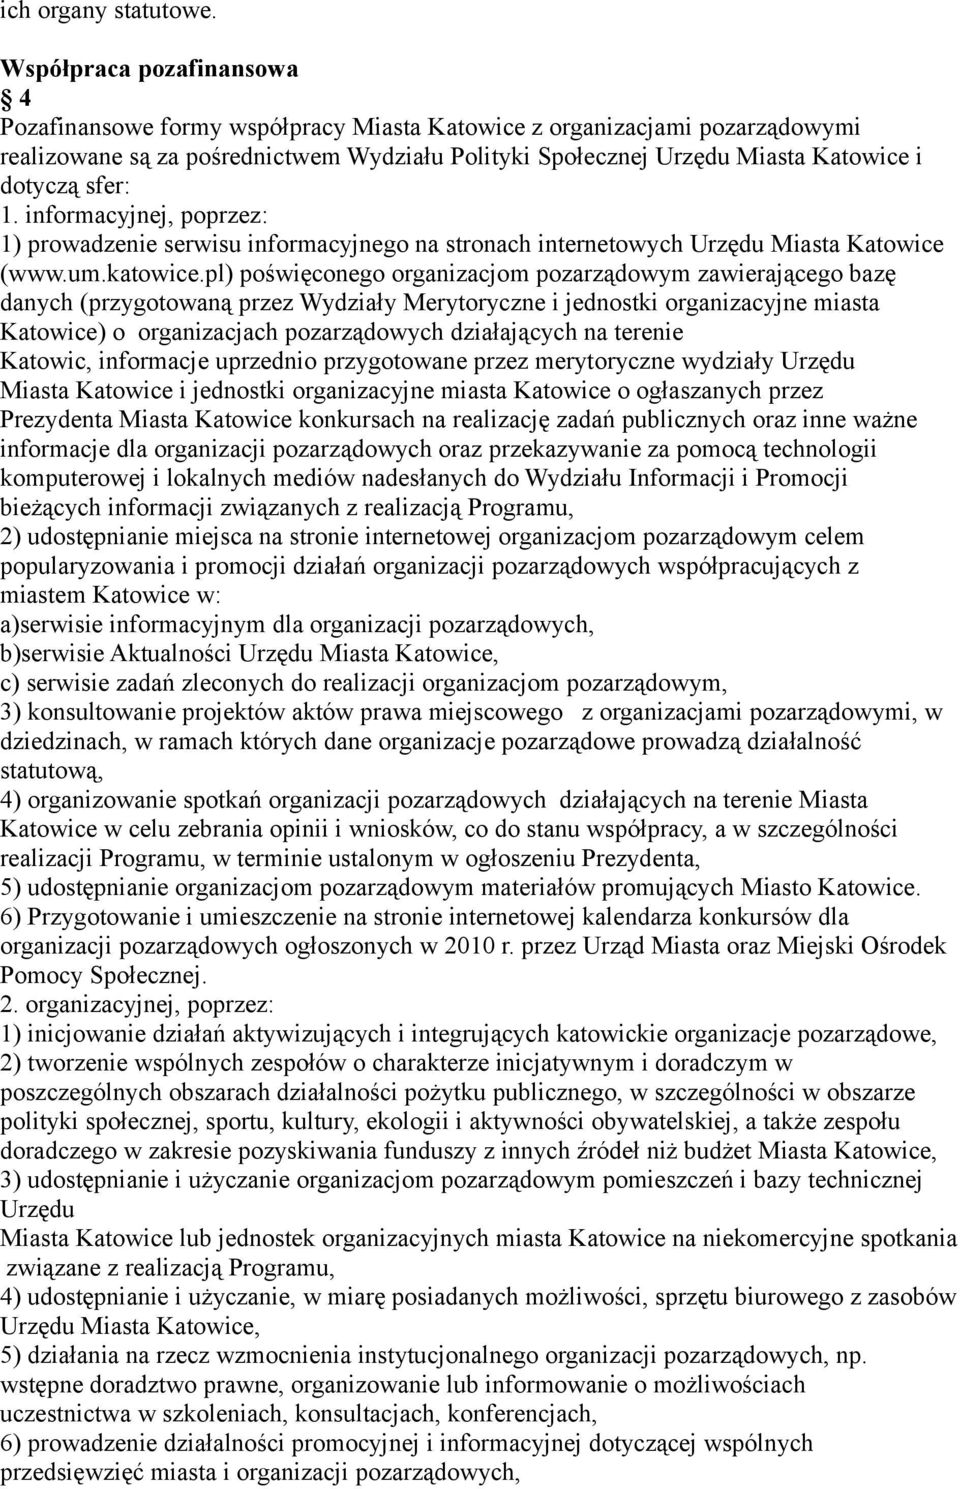 sfer: 1. informacyjnej, poprzez: 1) prowadzenie serwisu informacyjnego na stronach internetowych Urzędu Miasta Katowice (www.um.katowice.